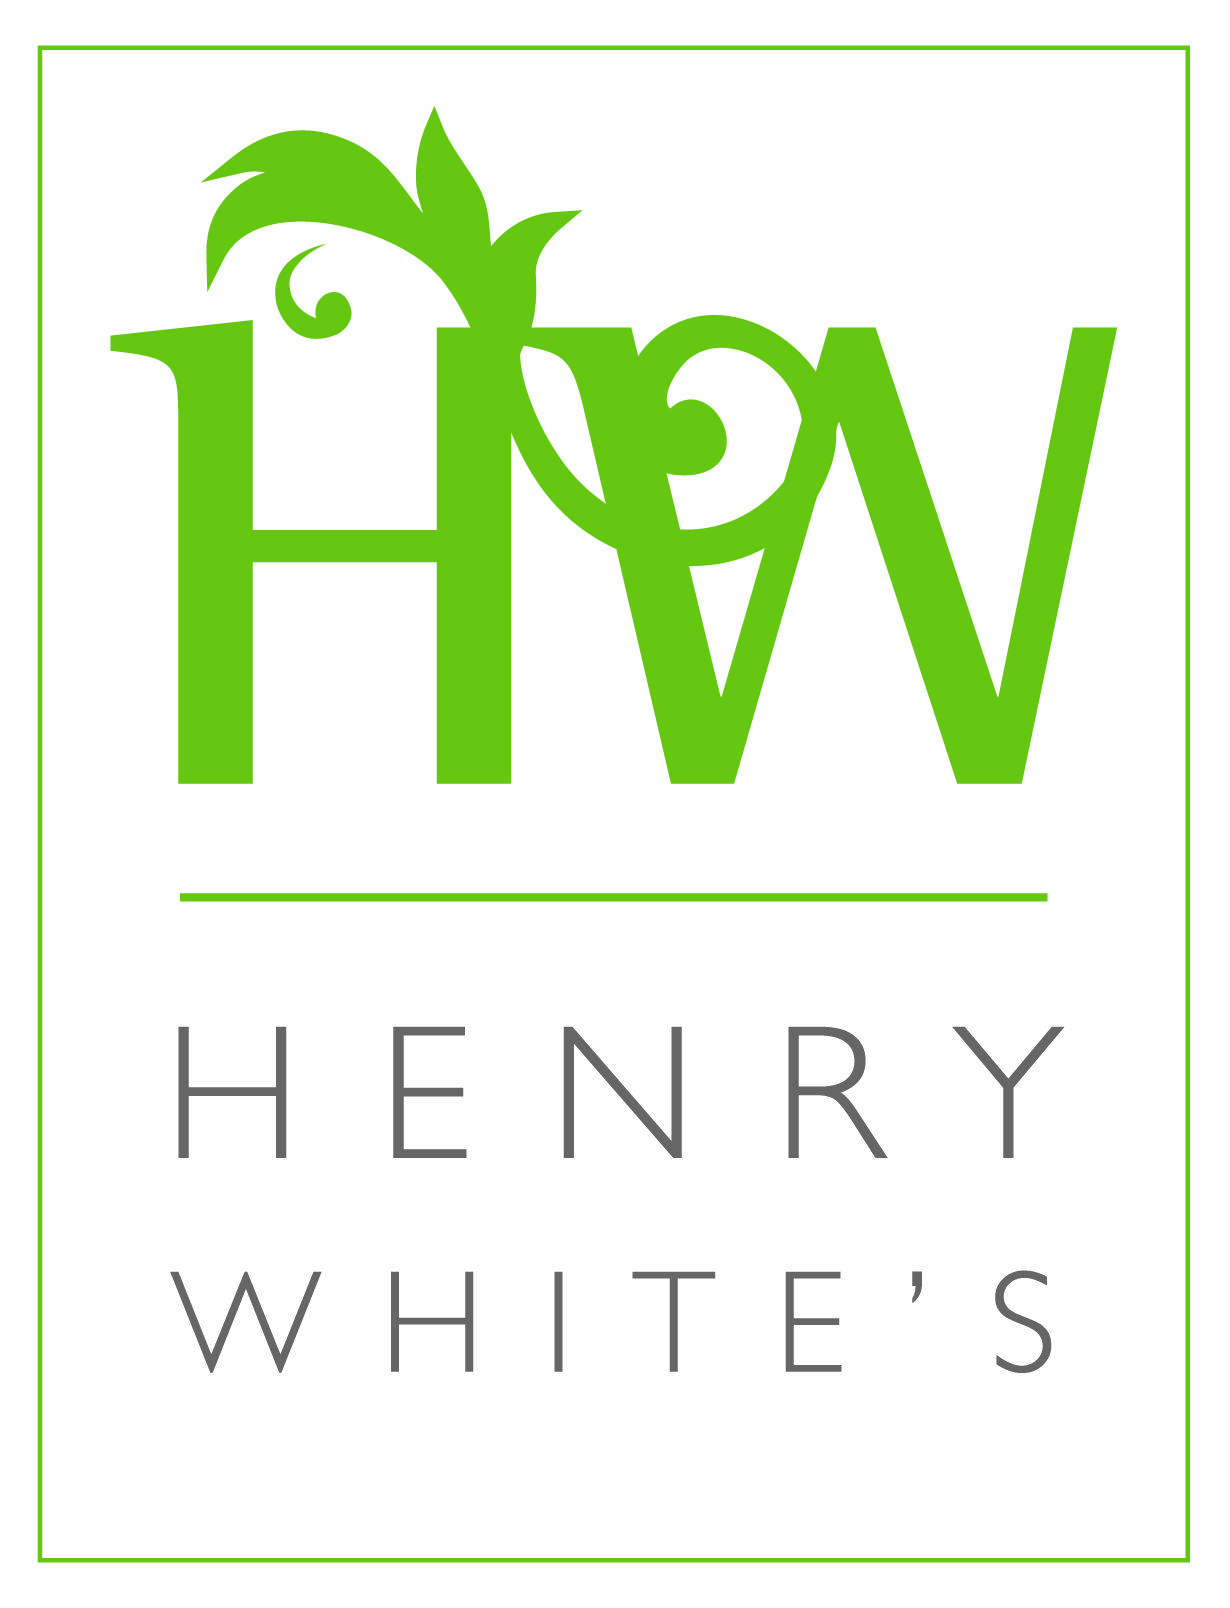 Green and White Restaurant Logo - Henry White's Restaurant | Fancourt